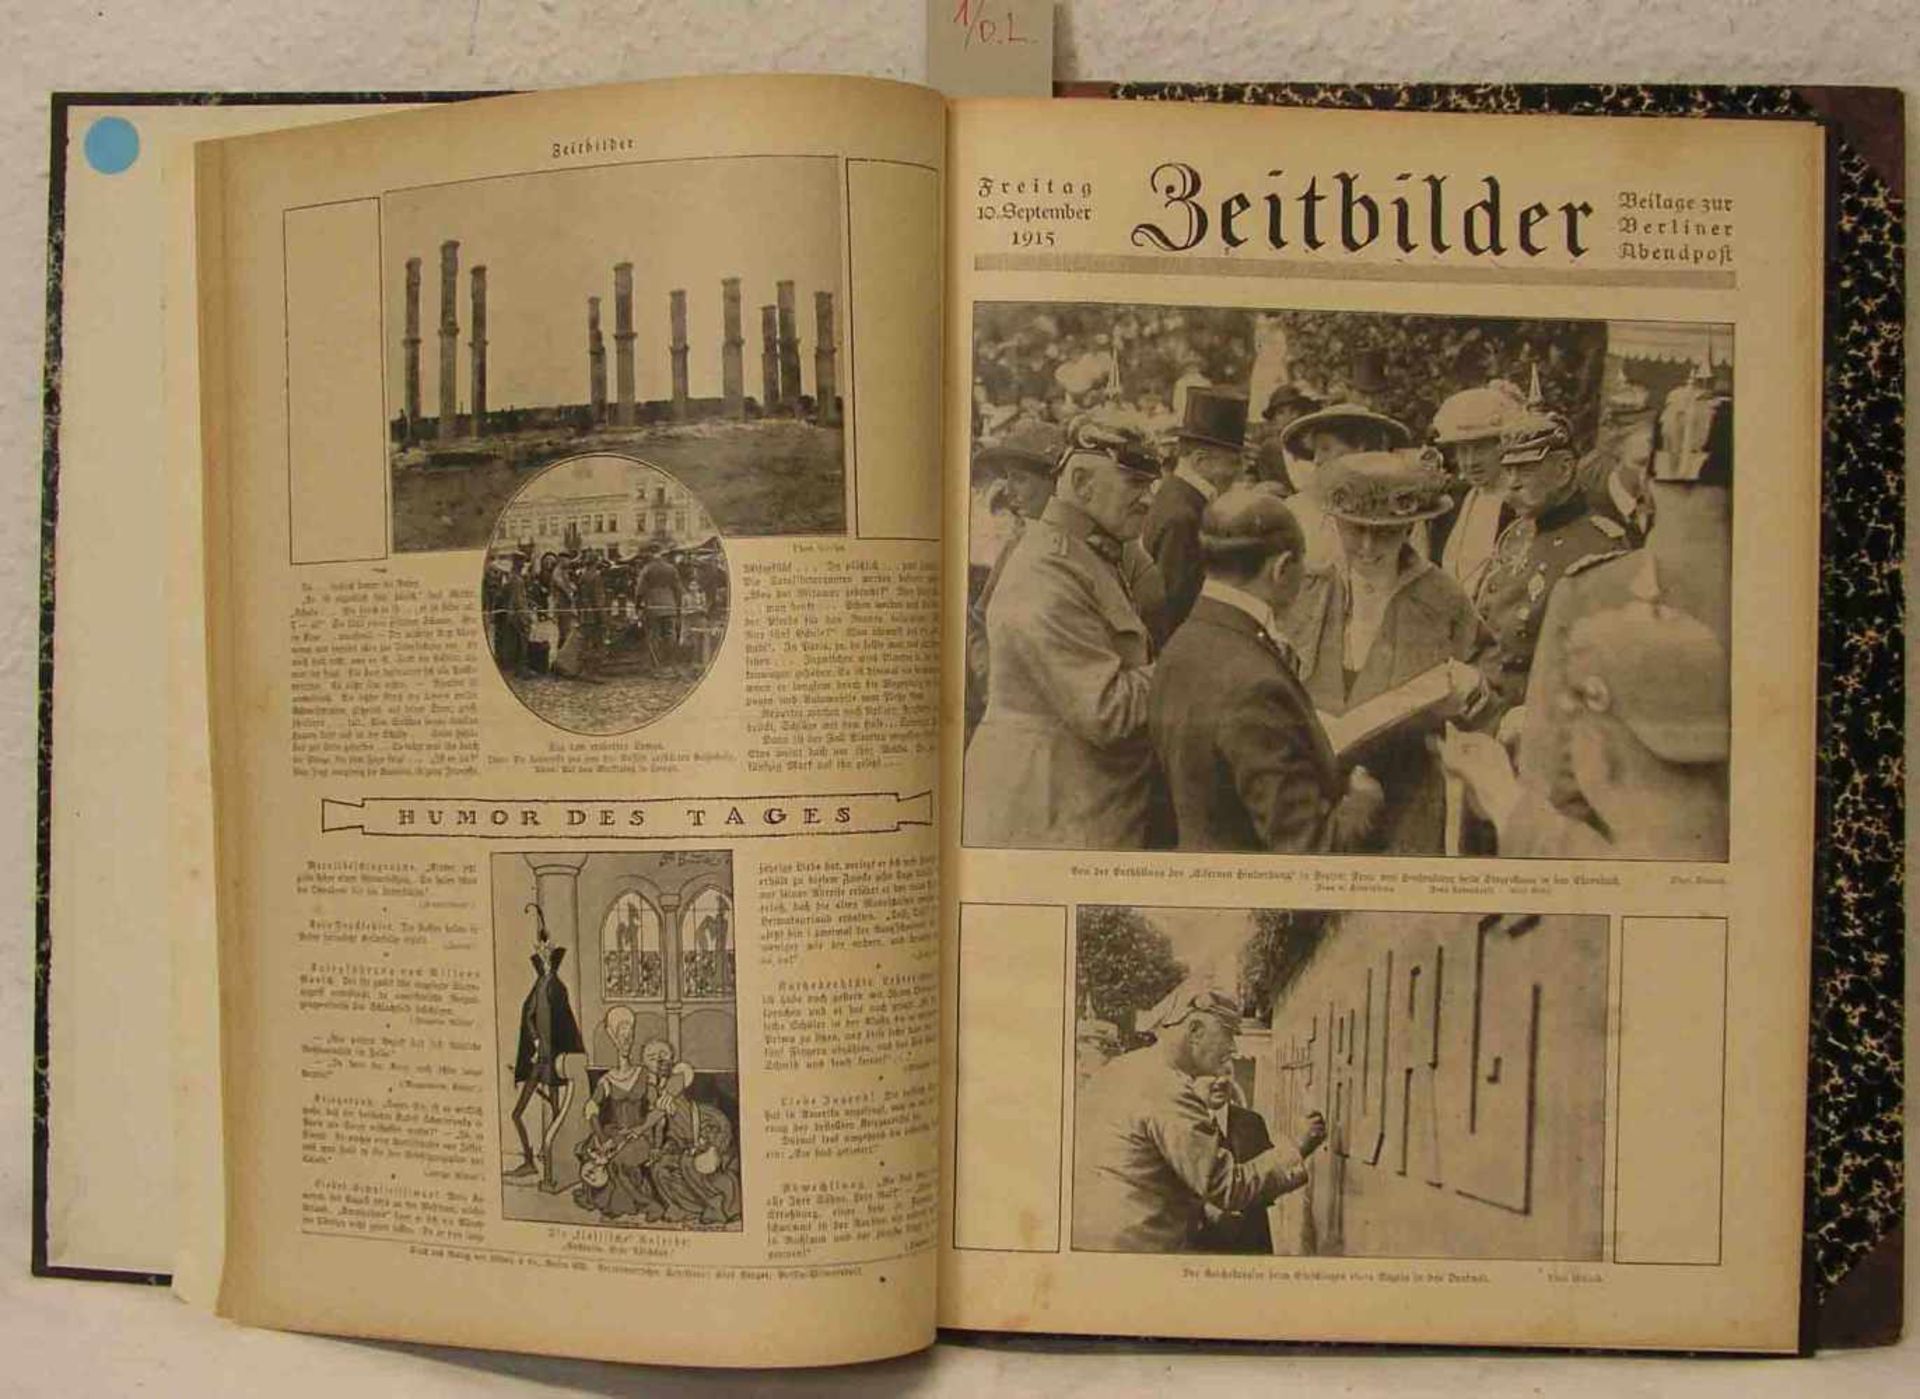 "Zeitbilder". Beilage zur Berliner Abendpost, November 1914 - Dezember 1915.